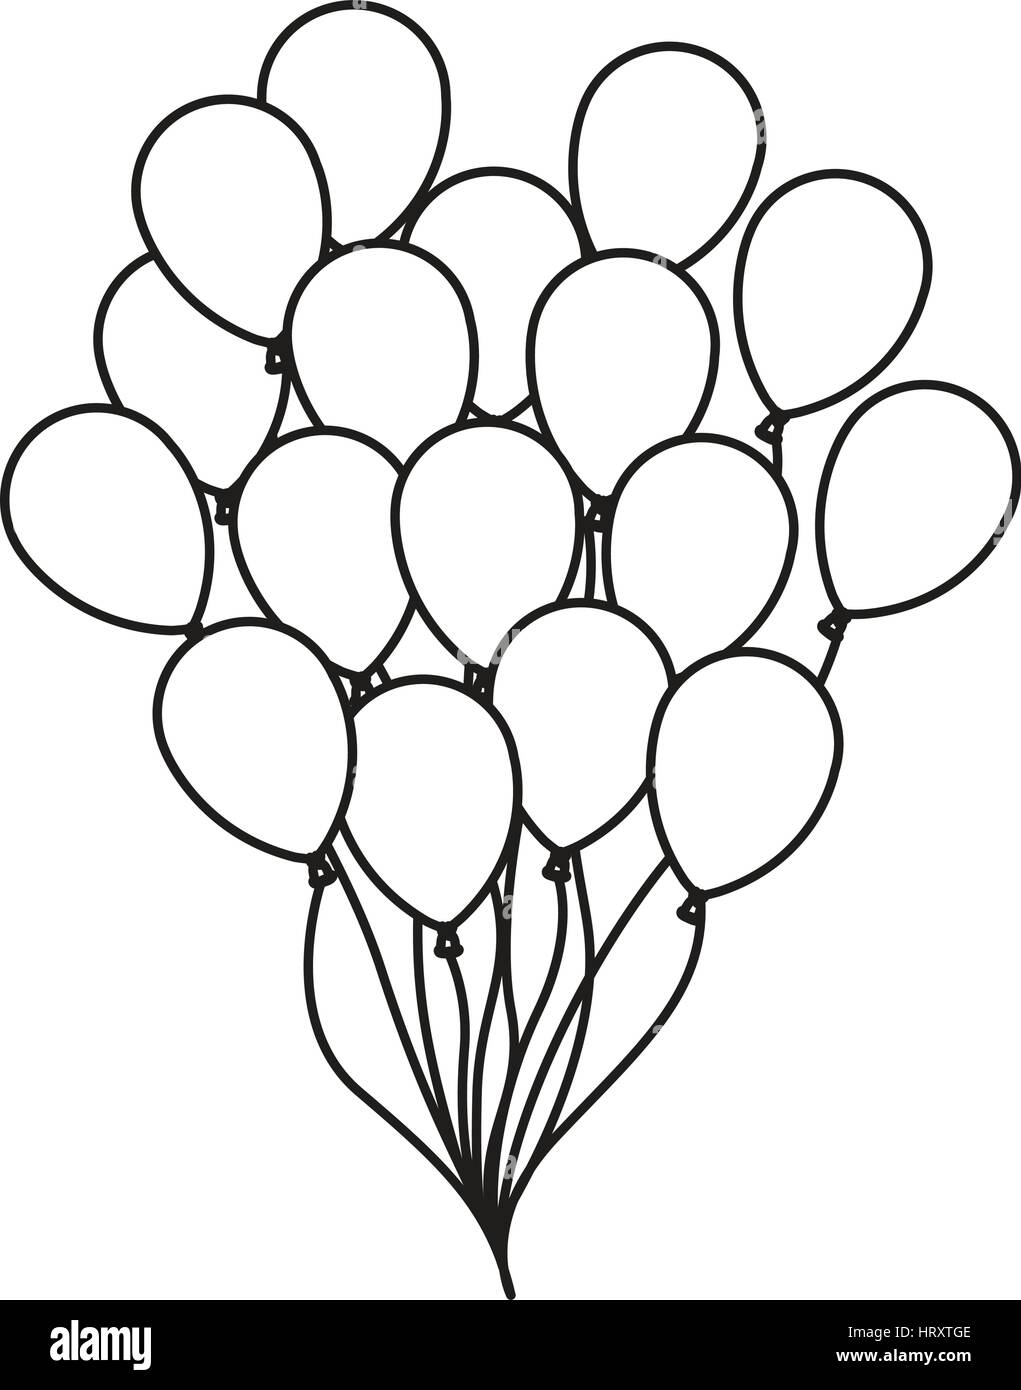 Silhouette Dessin Bouquet De Ballons D Anniversaire De Partie De Vol Image Vectorielle Stock Alamy